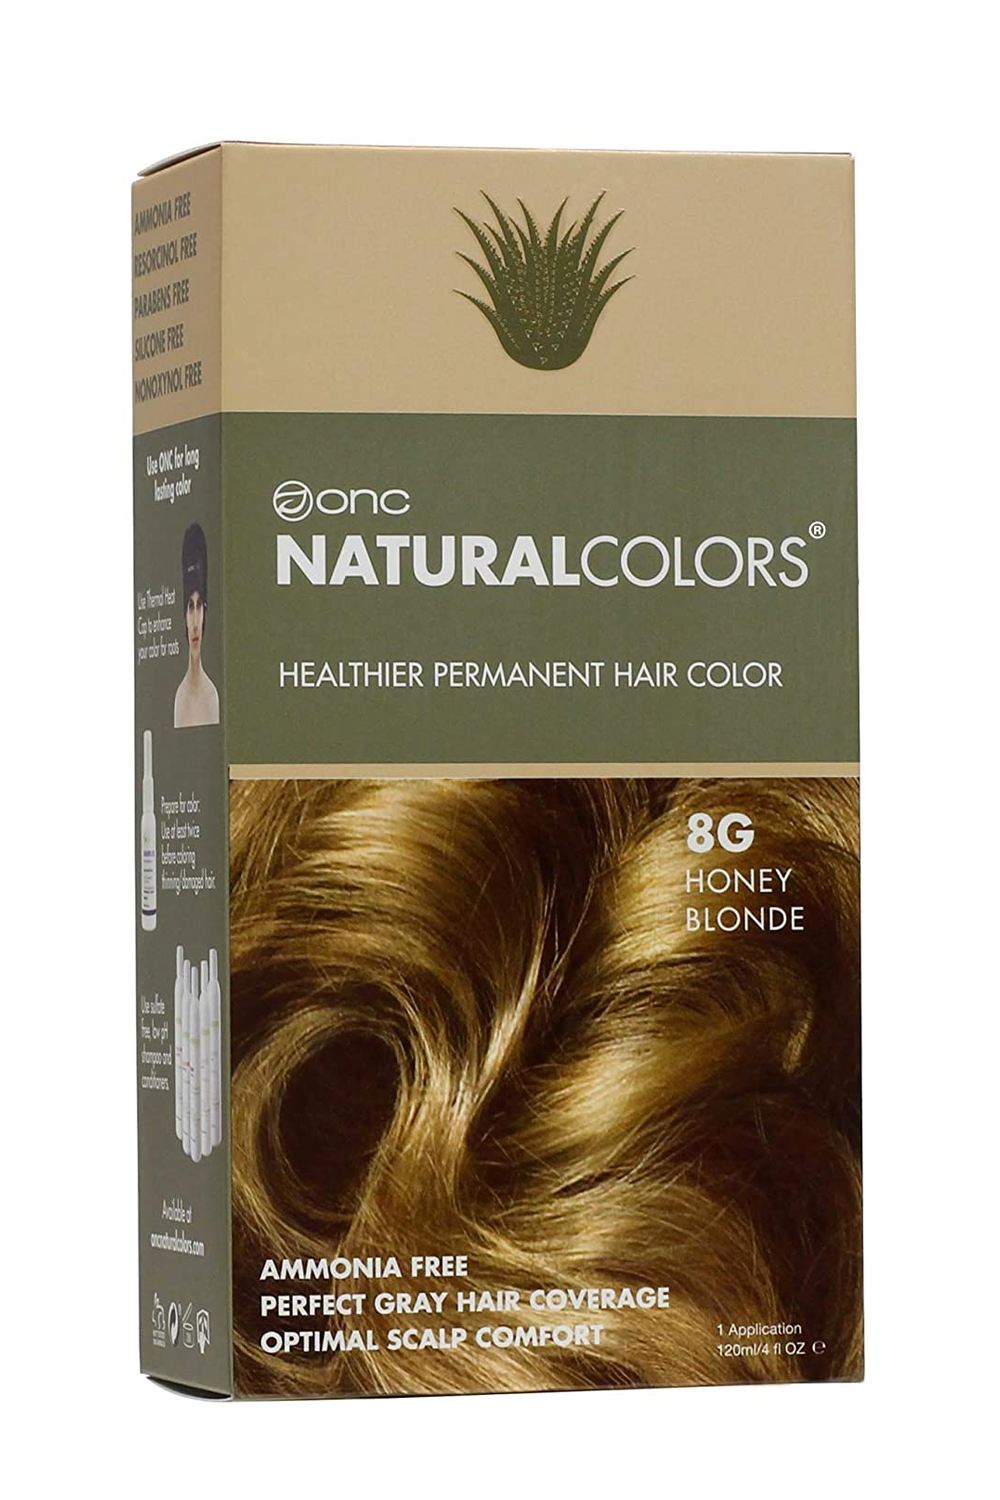 Onc NaturalColors Healthier Permanent Hair Color